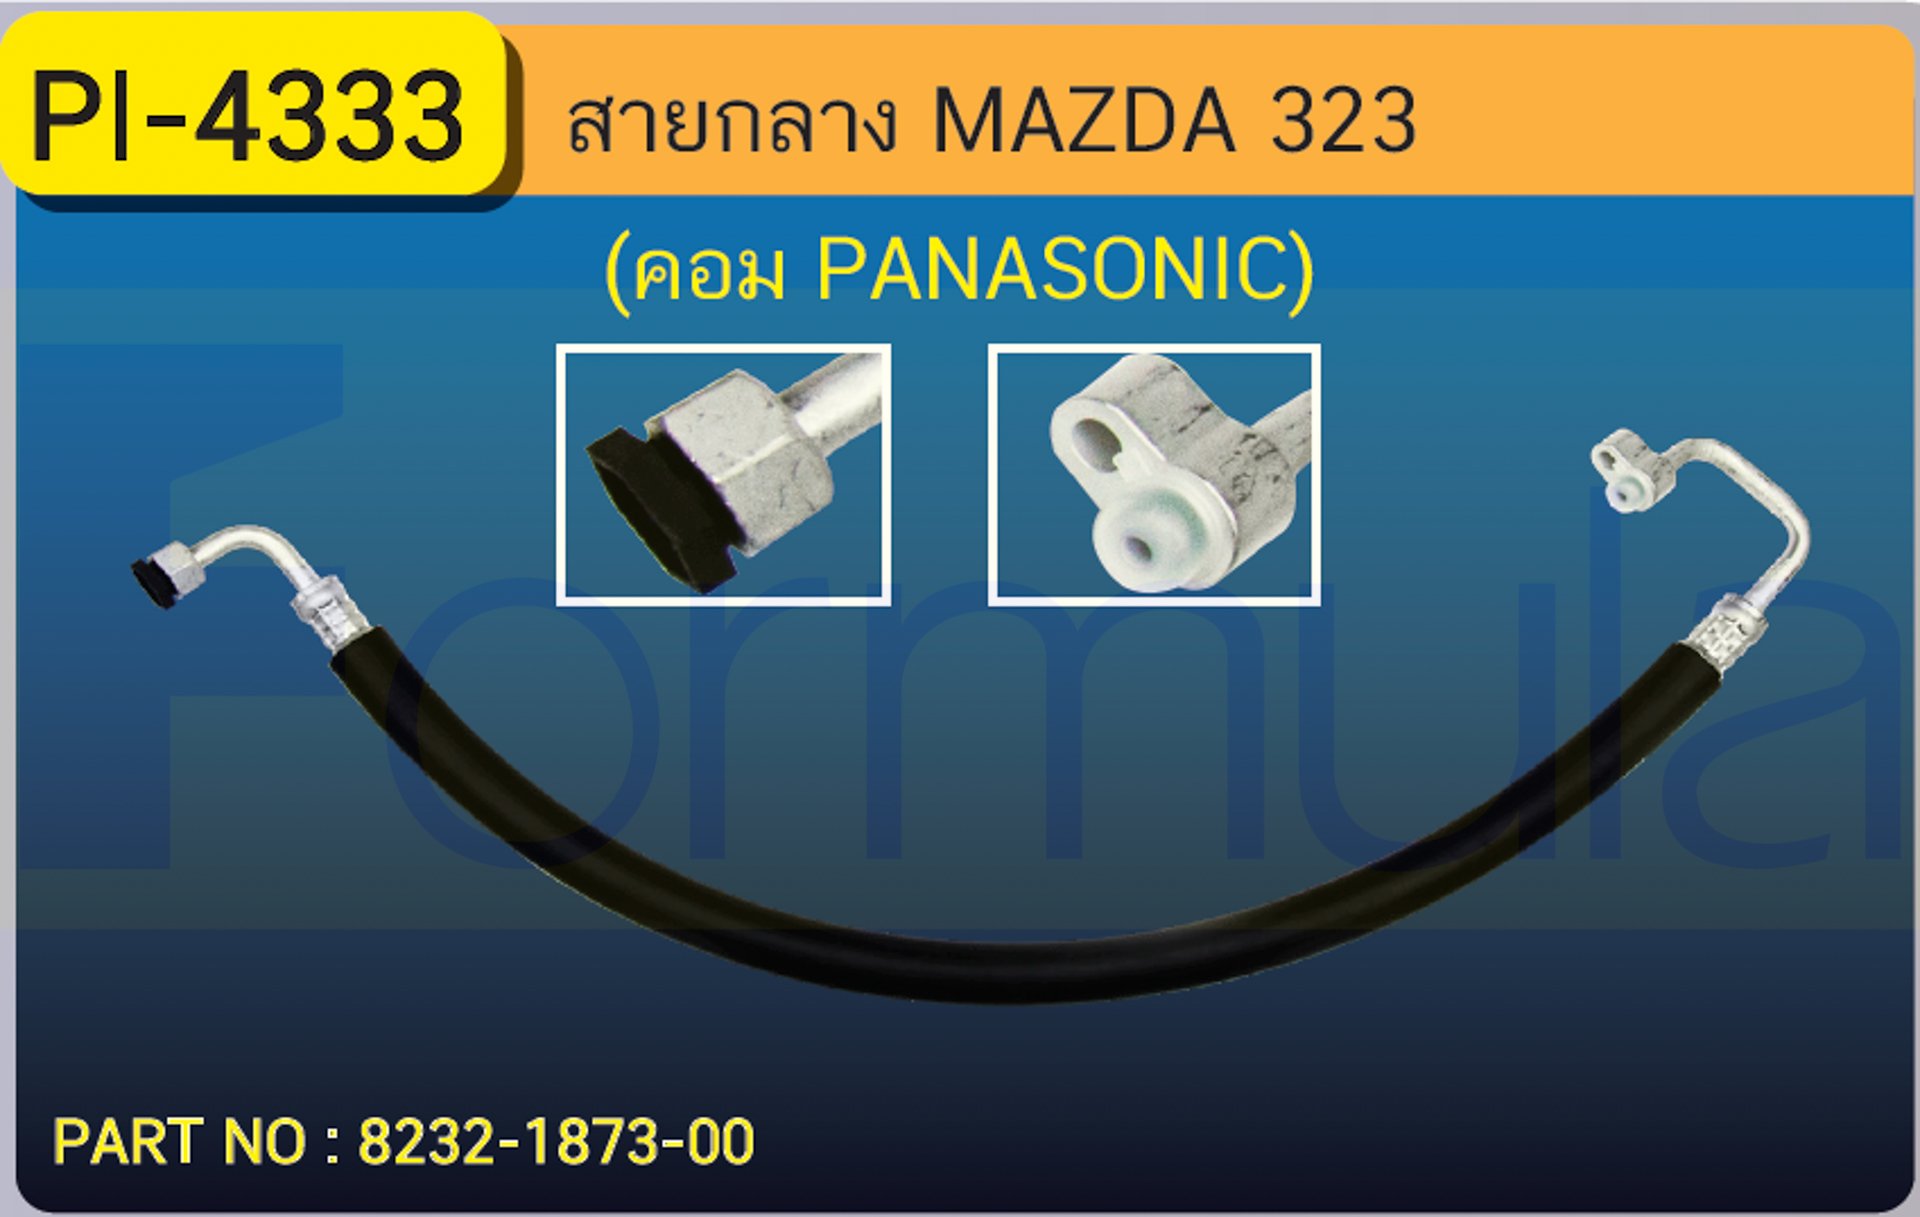 HOSE 1/2" MAZDA 323 (COMP.PANA) (134a)